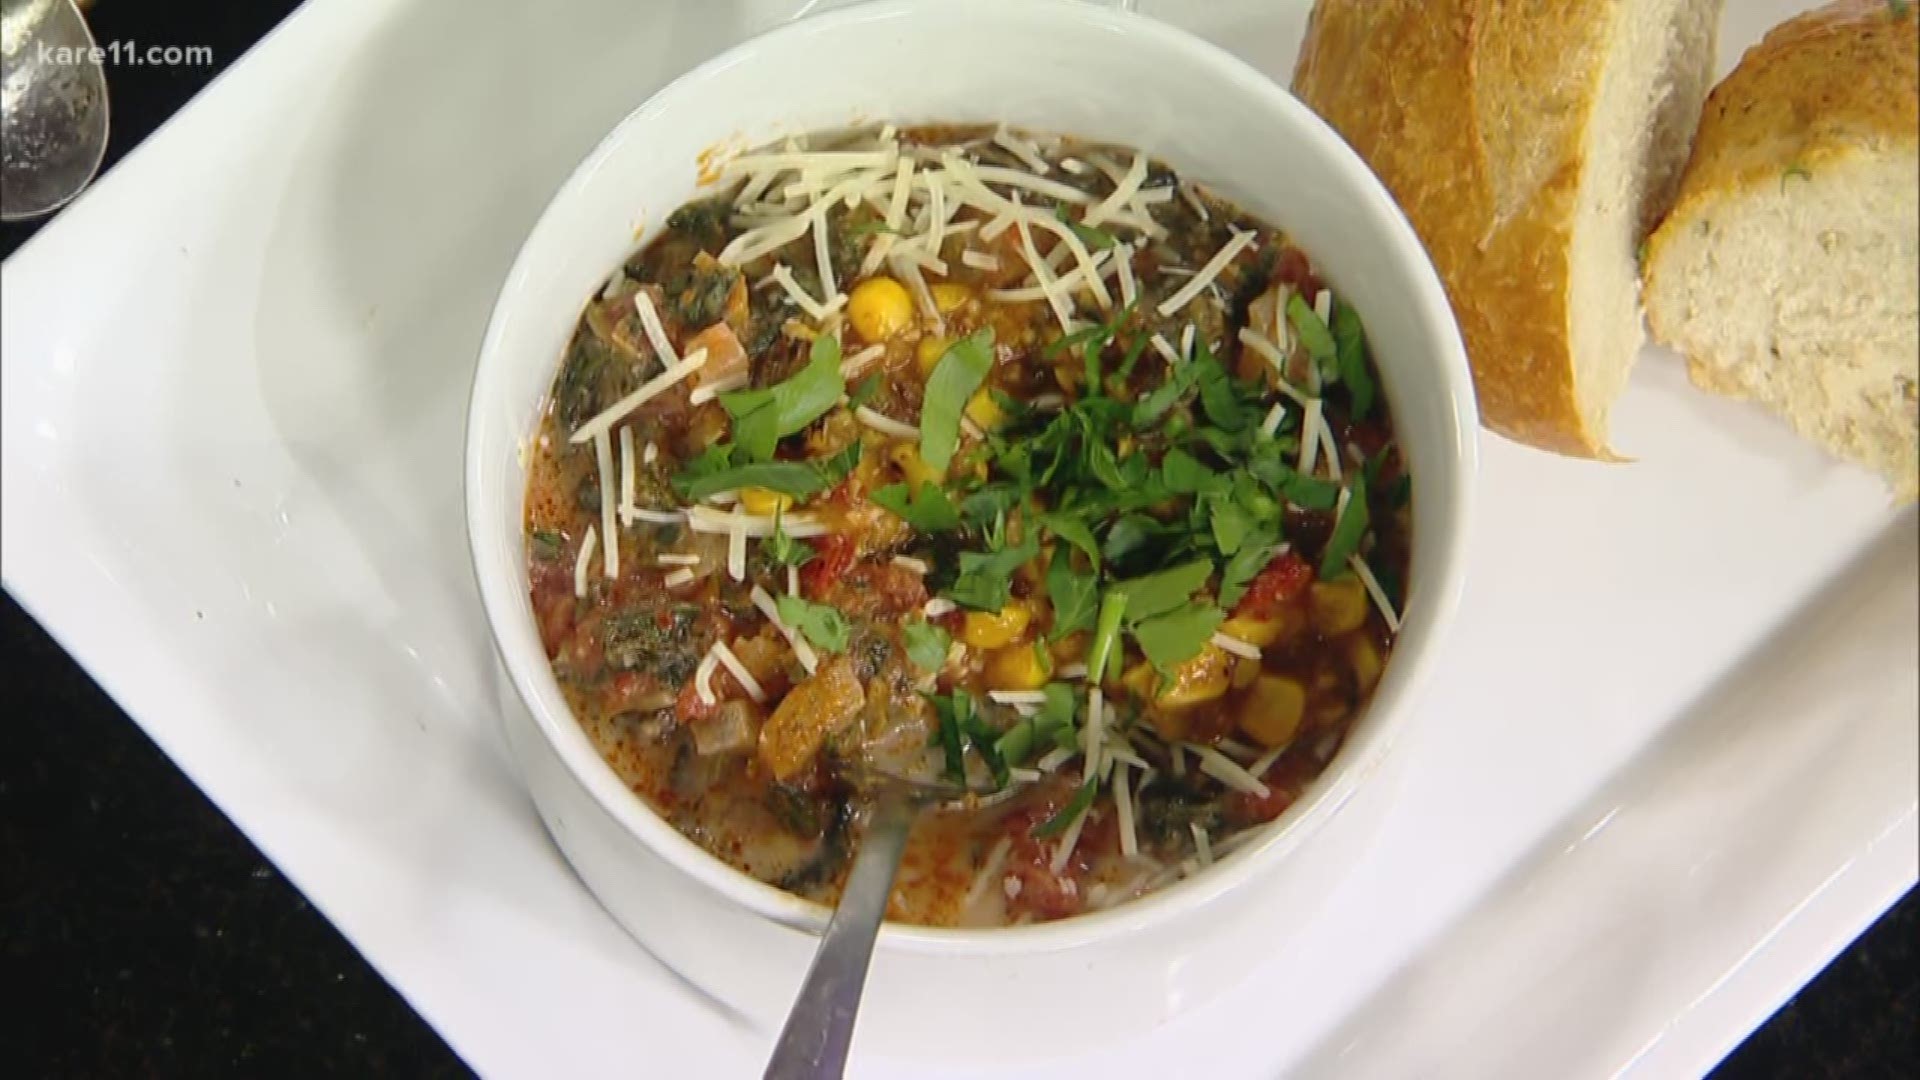 RECIPE: Beth Dooley's hot and savory soup | kare11.com